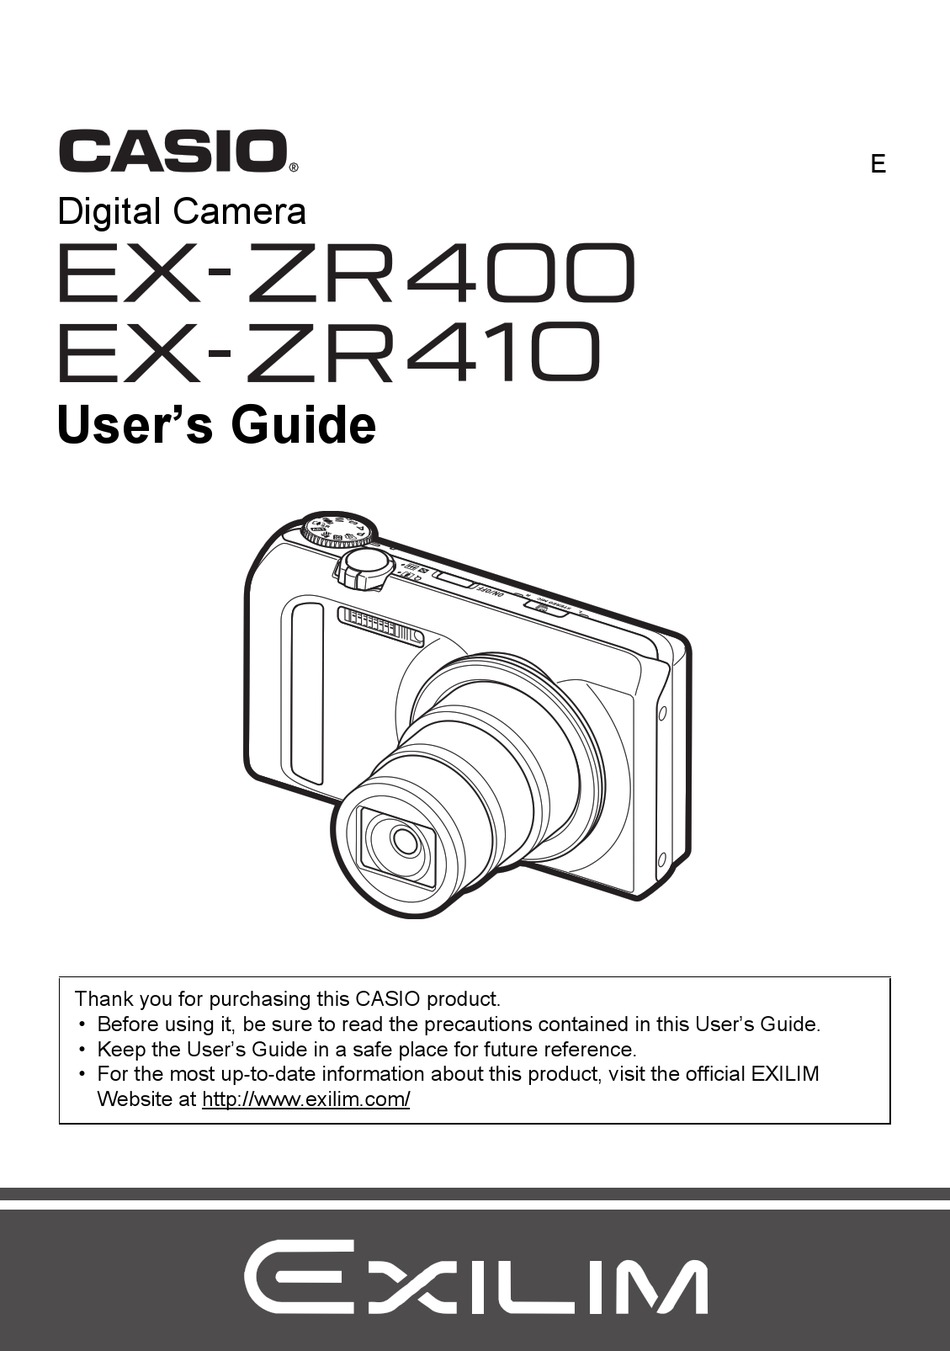 parfum Gehakt Ik heb het erkend CASIO EXILIM EX-ZR400 USER MANUAL Pdf Download | ManualsLib